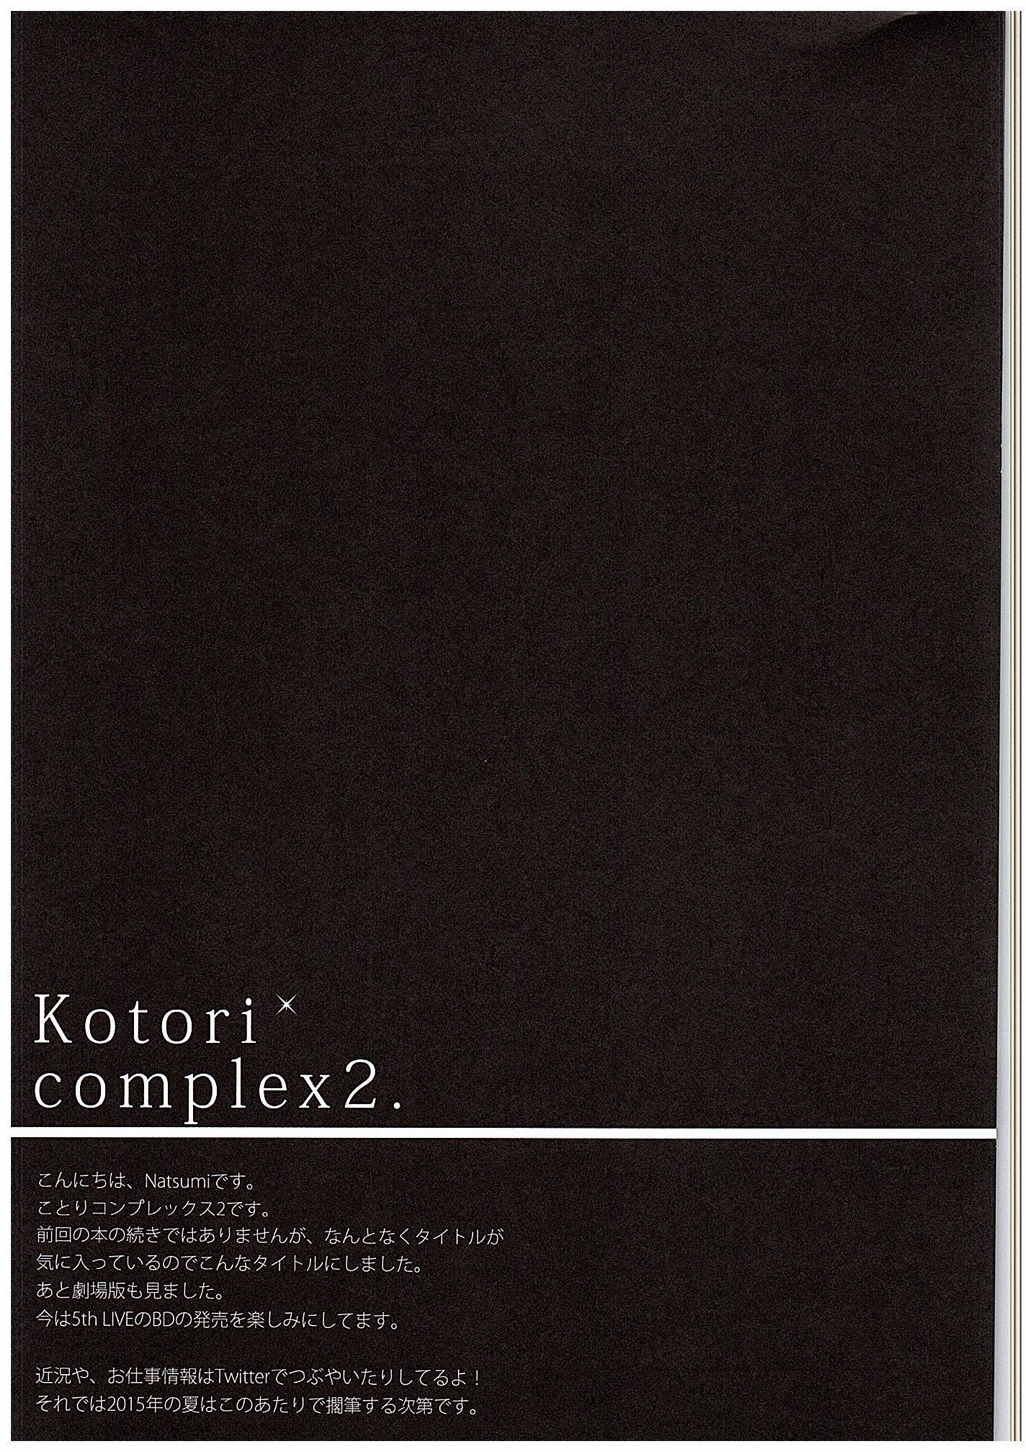 (C88) [IK.projectear (natsumi)] Kotori Complex2 (ラブライブ!)